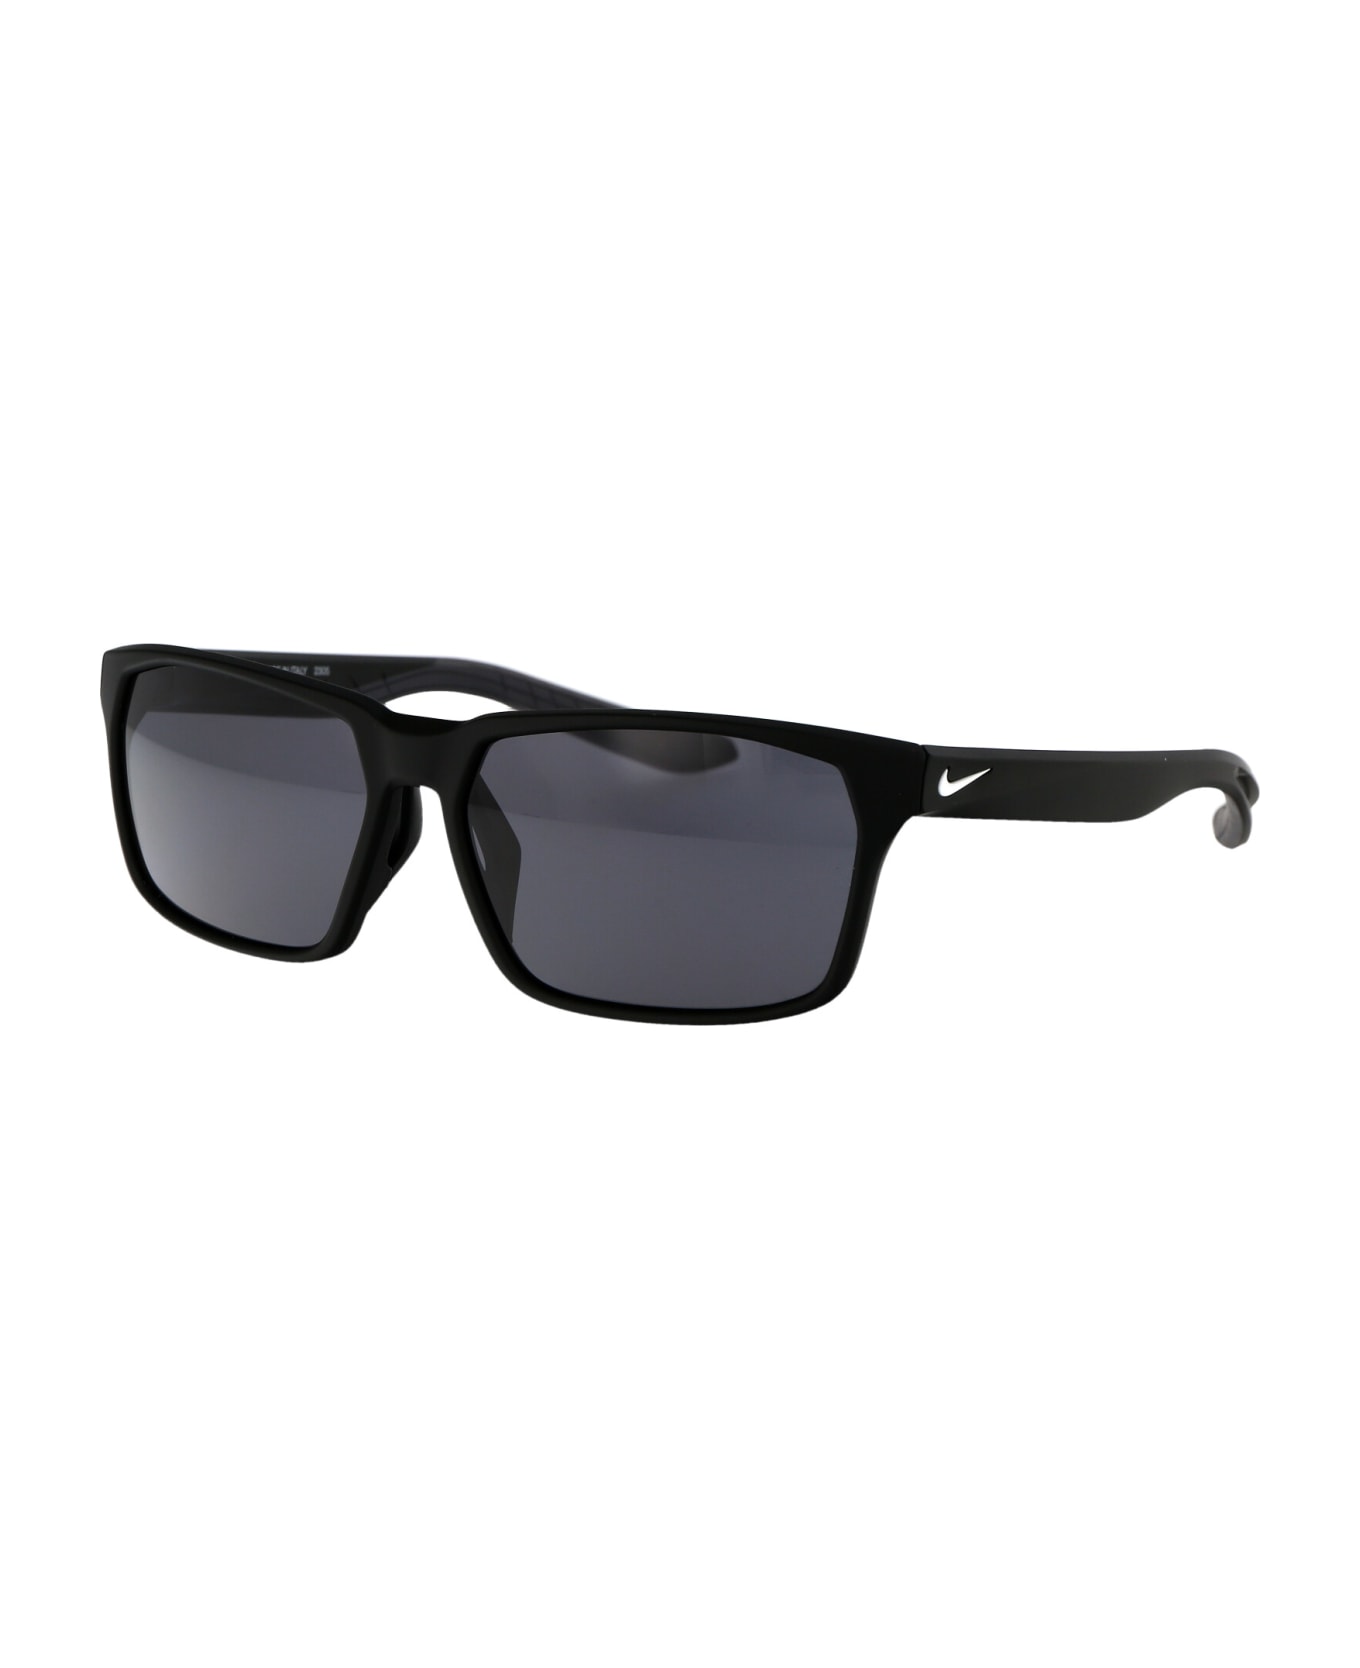 Nike Maverick Rge Sunglasses - 010 BLACK/WHITE NOIR/BLANC